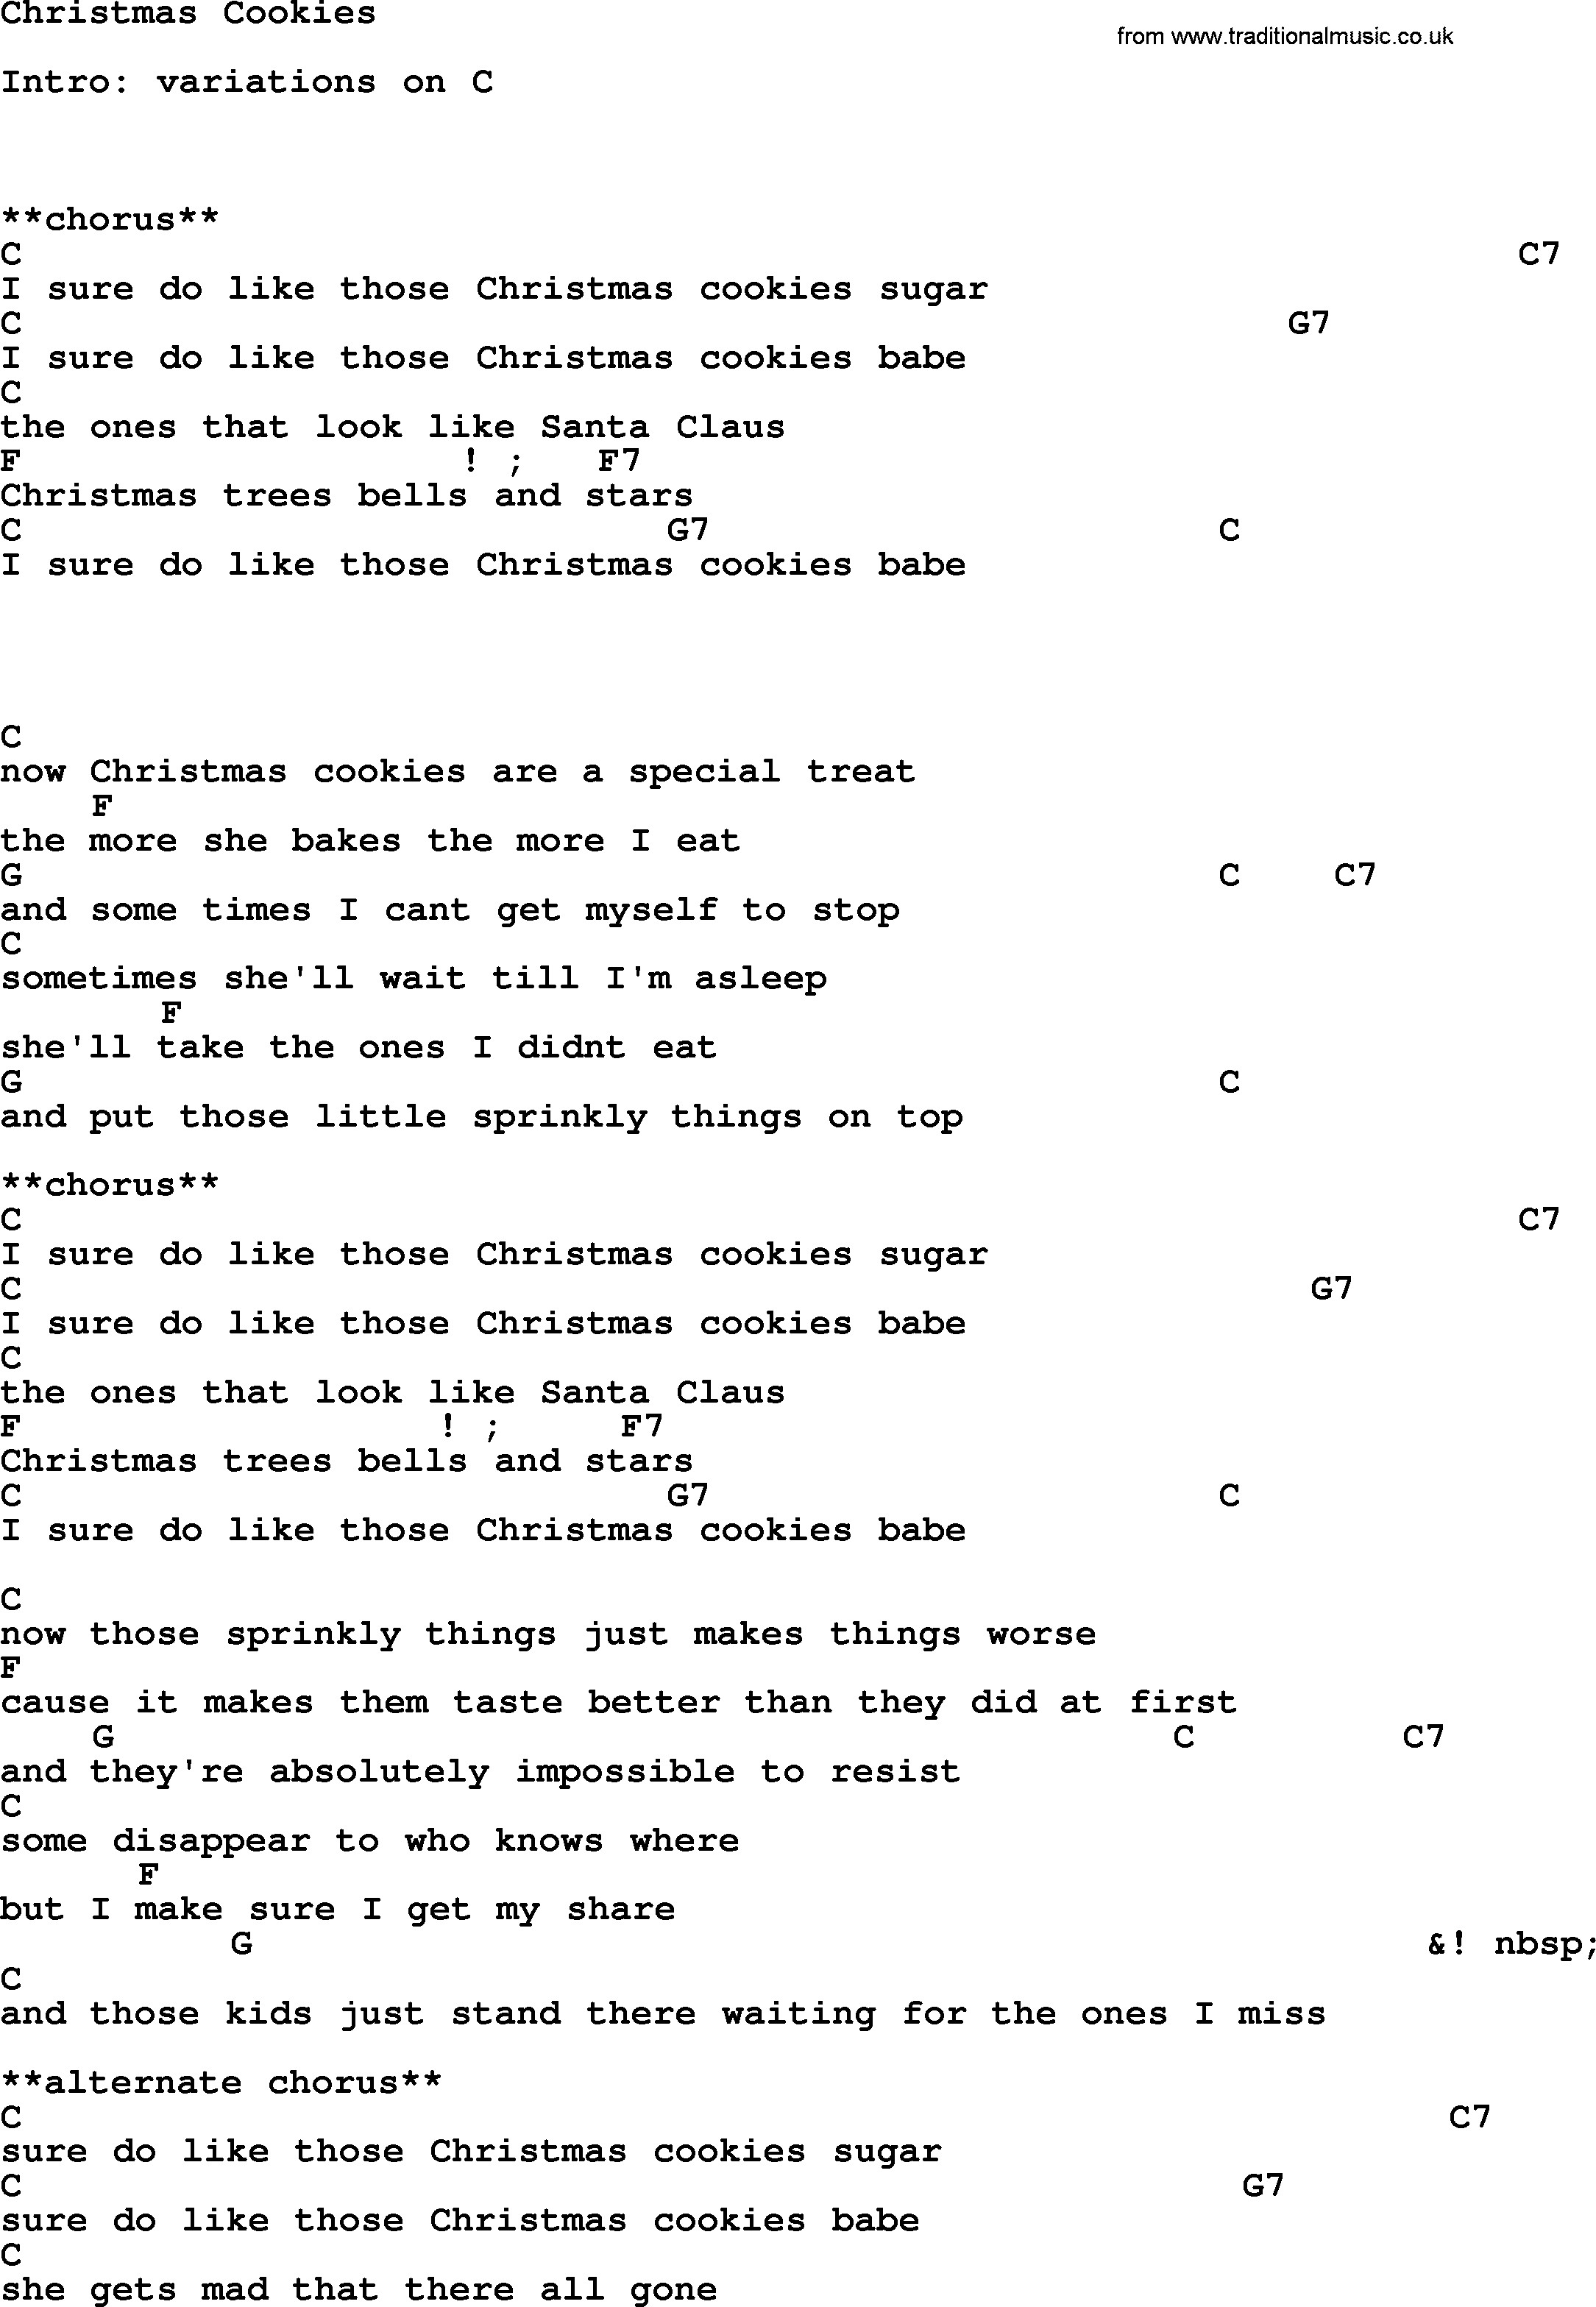 George Strait Christmas Cookies Lyrics
 Christmas Cookies by George Strait lyrics and chords